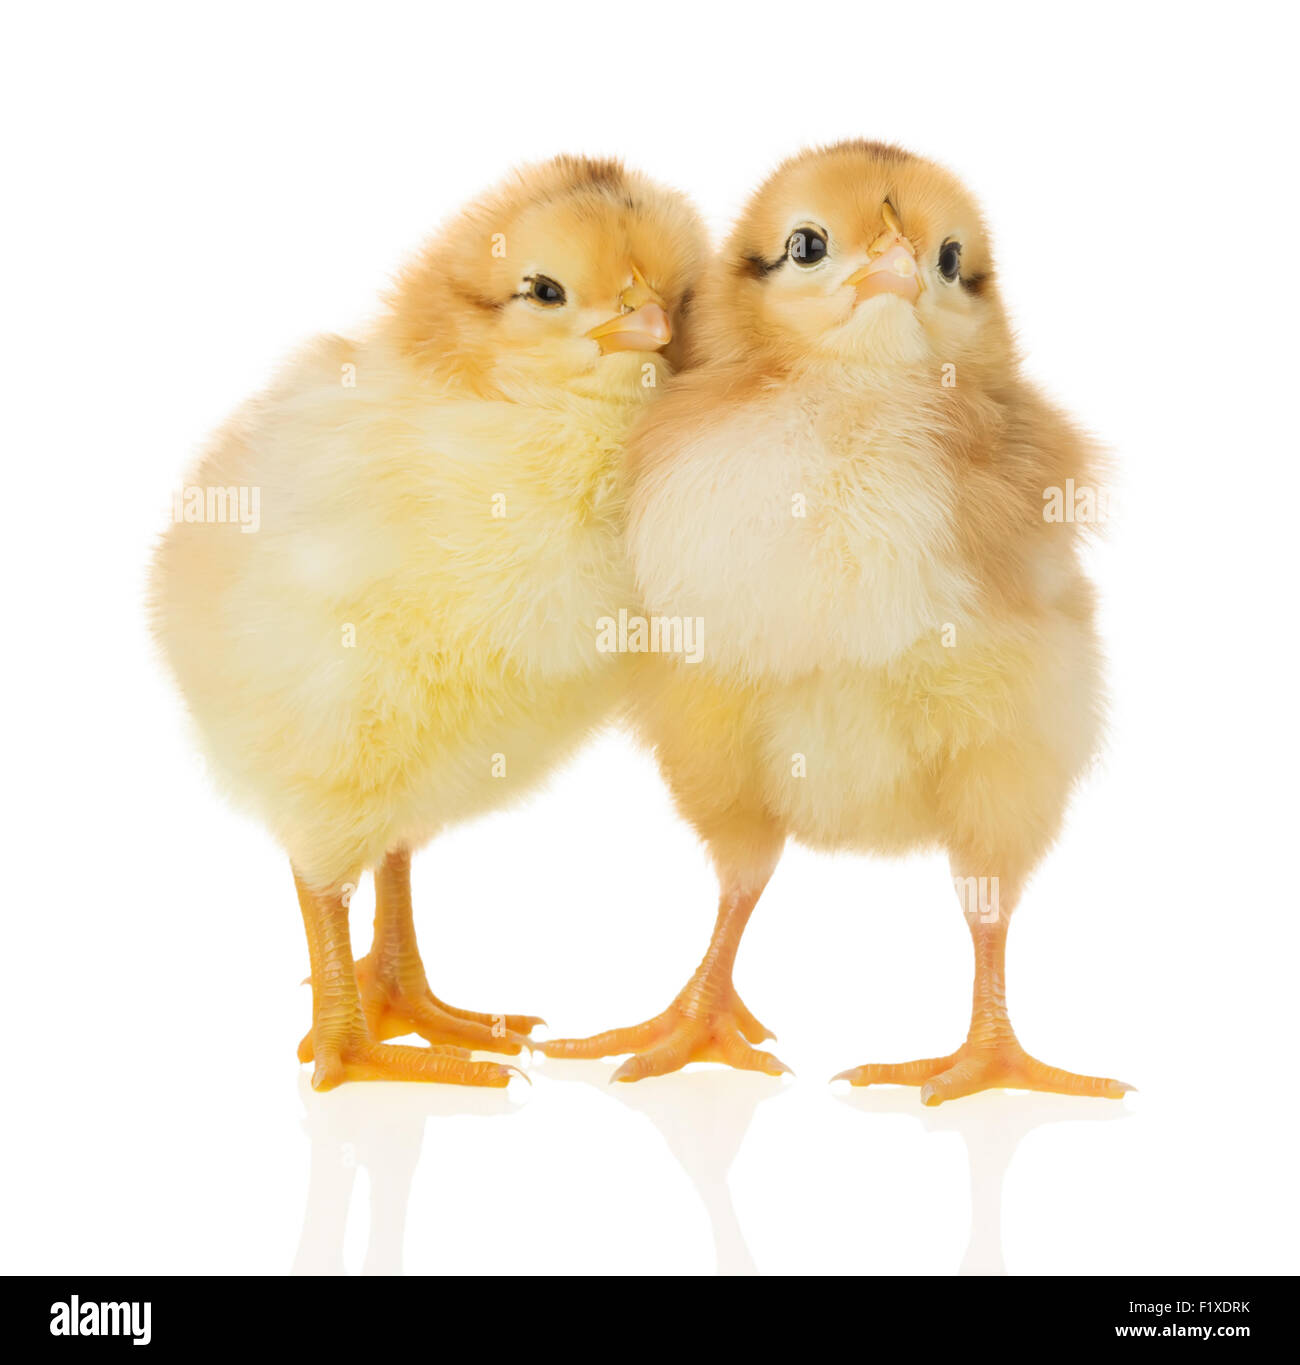 Hühner auf dem weißen Hintergrund. Stockfoto